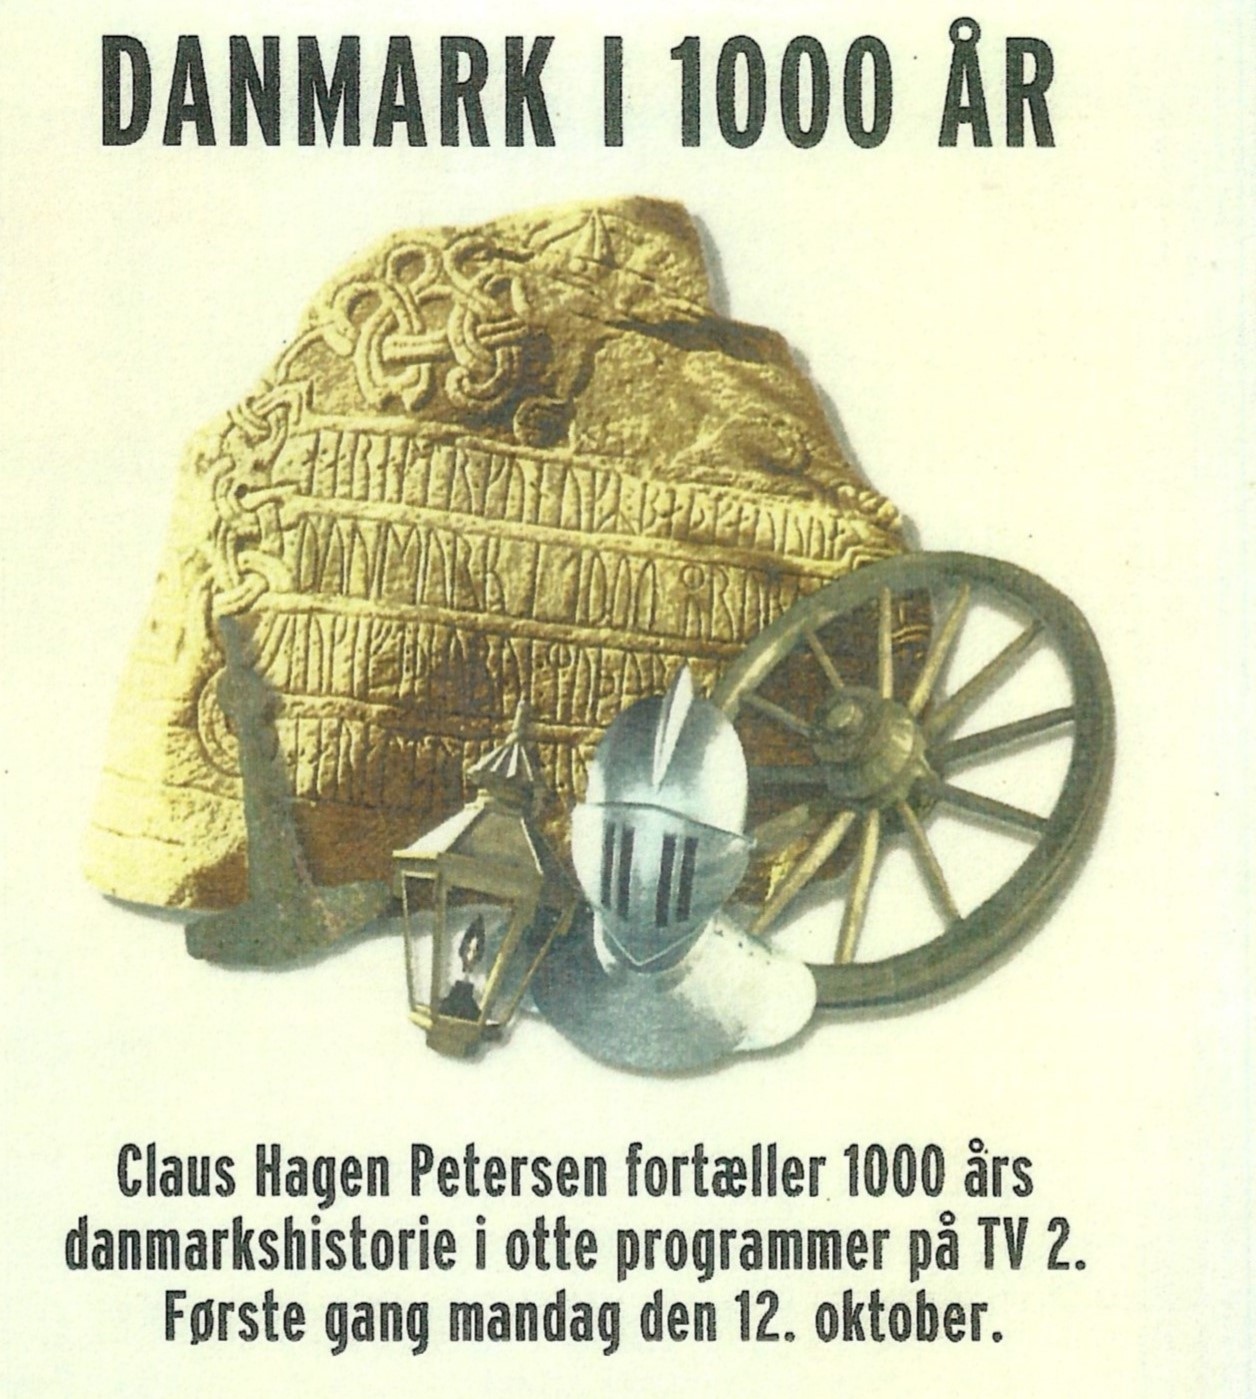 Danmark i 1000 år